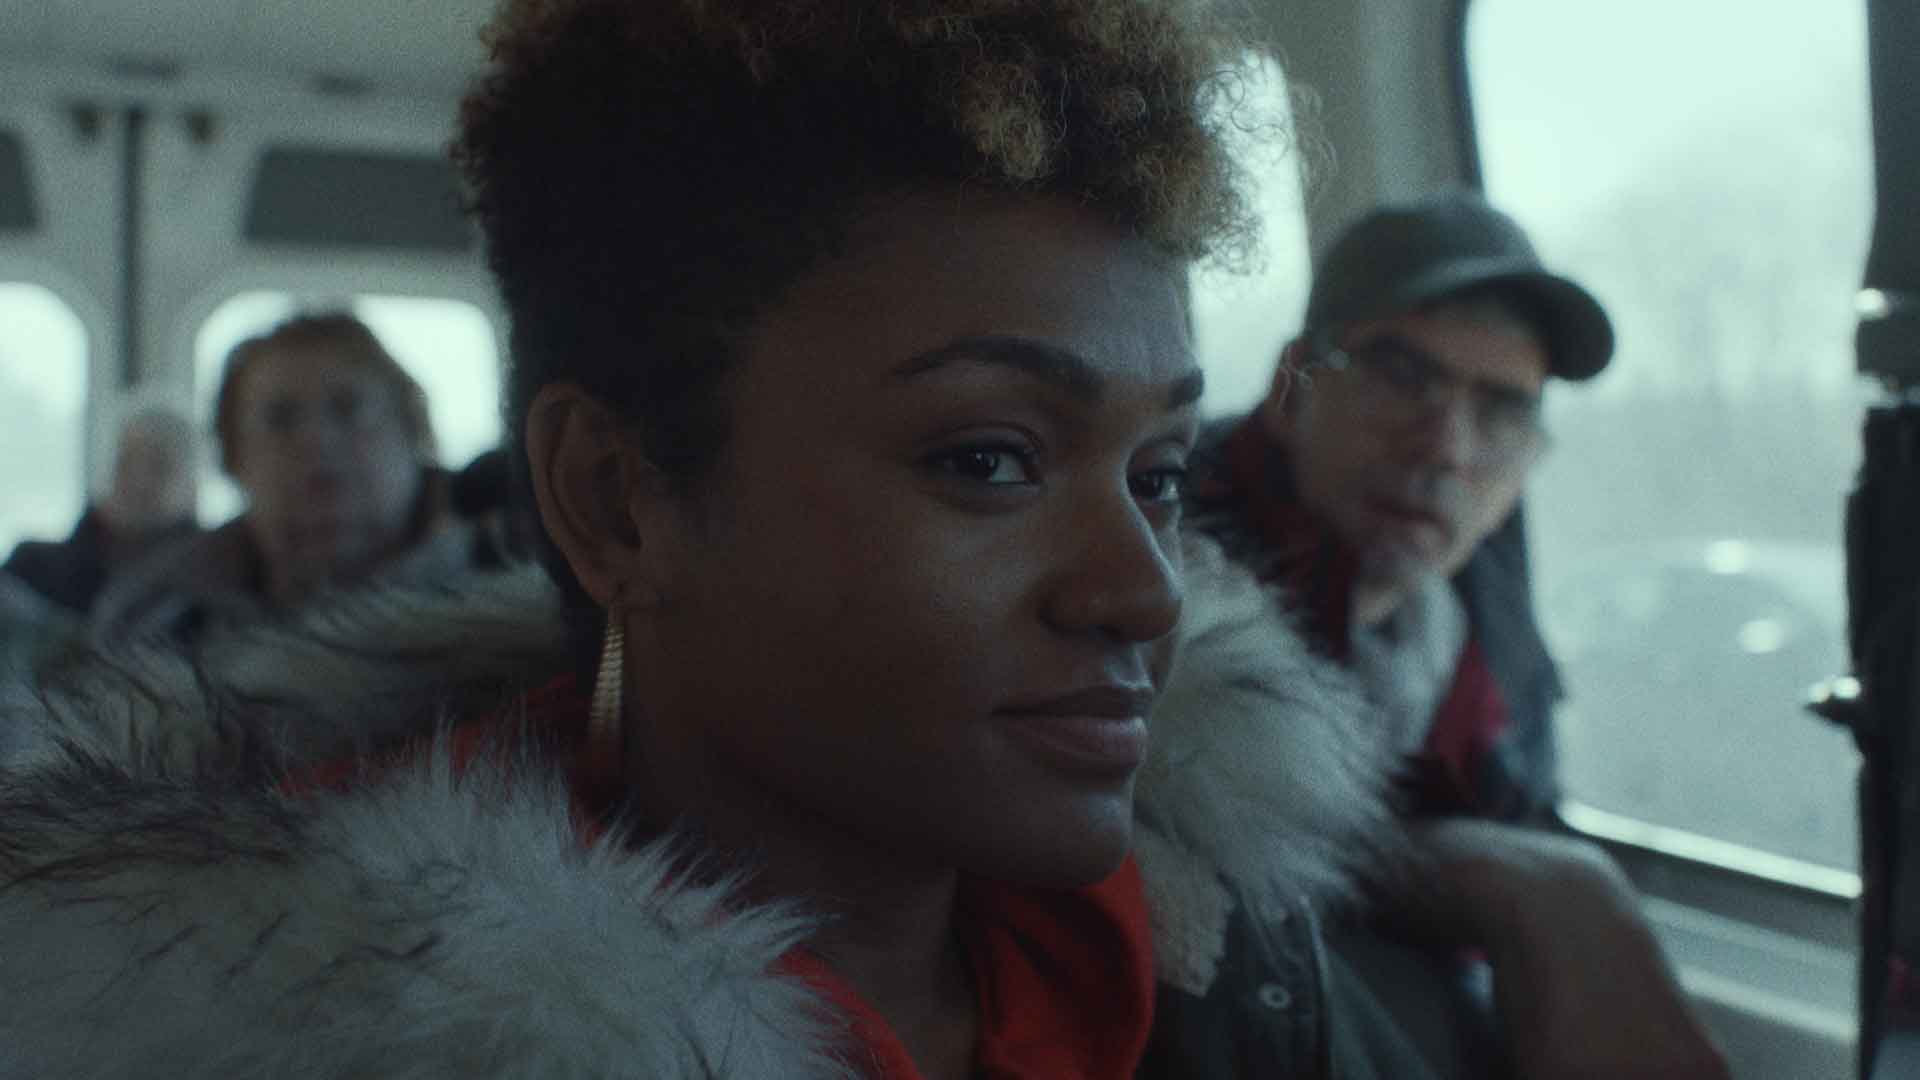 Une jeune femme dans un bus sourit. Extrait du film Give me liberty de Kirill Mikhanovsky